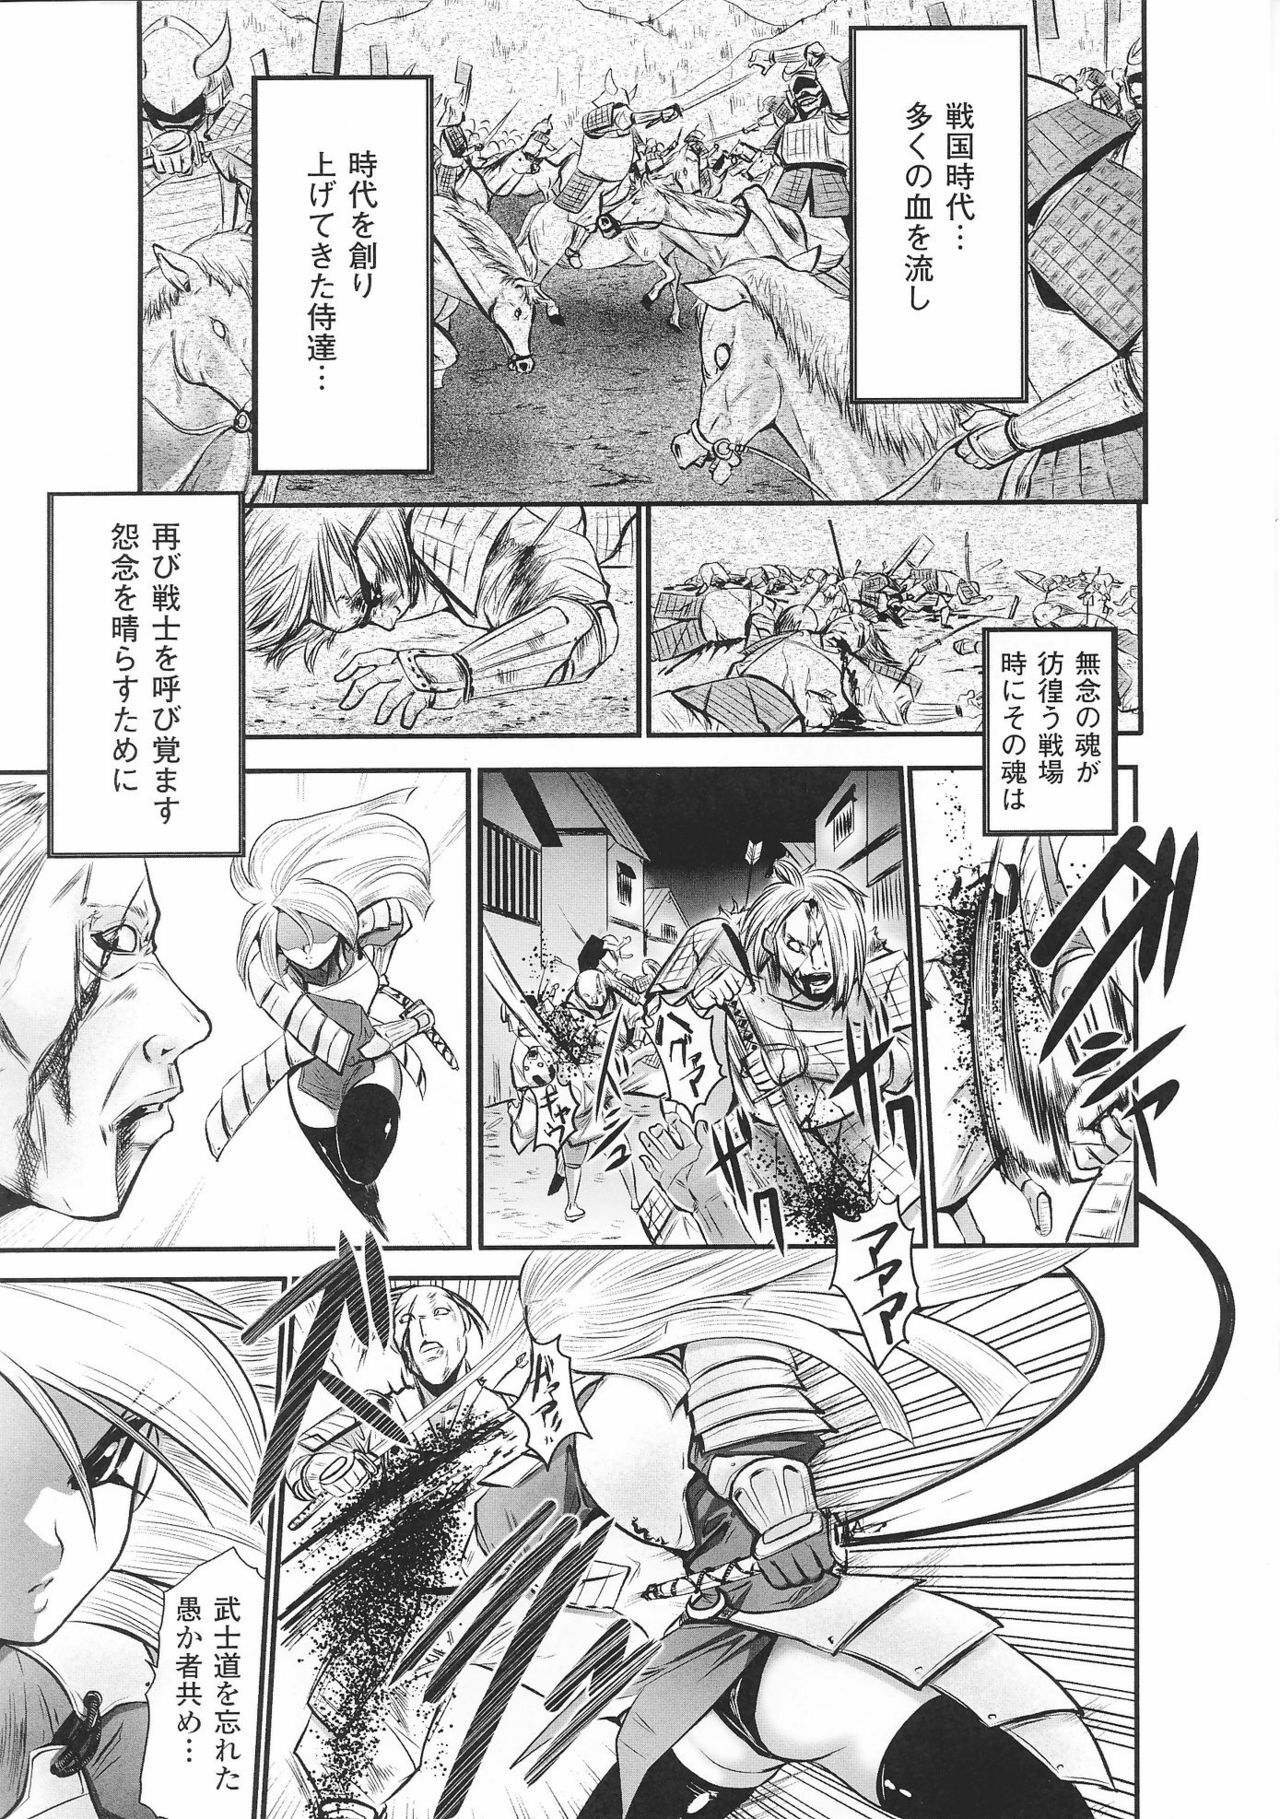 [Anthology] Hime Musha Anthology Comics | Princess Warrior Anthology Comics page 27 full